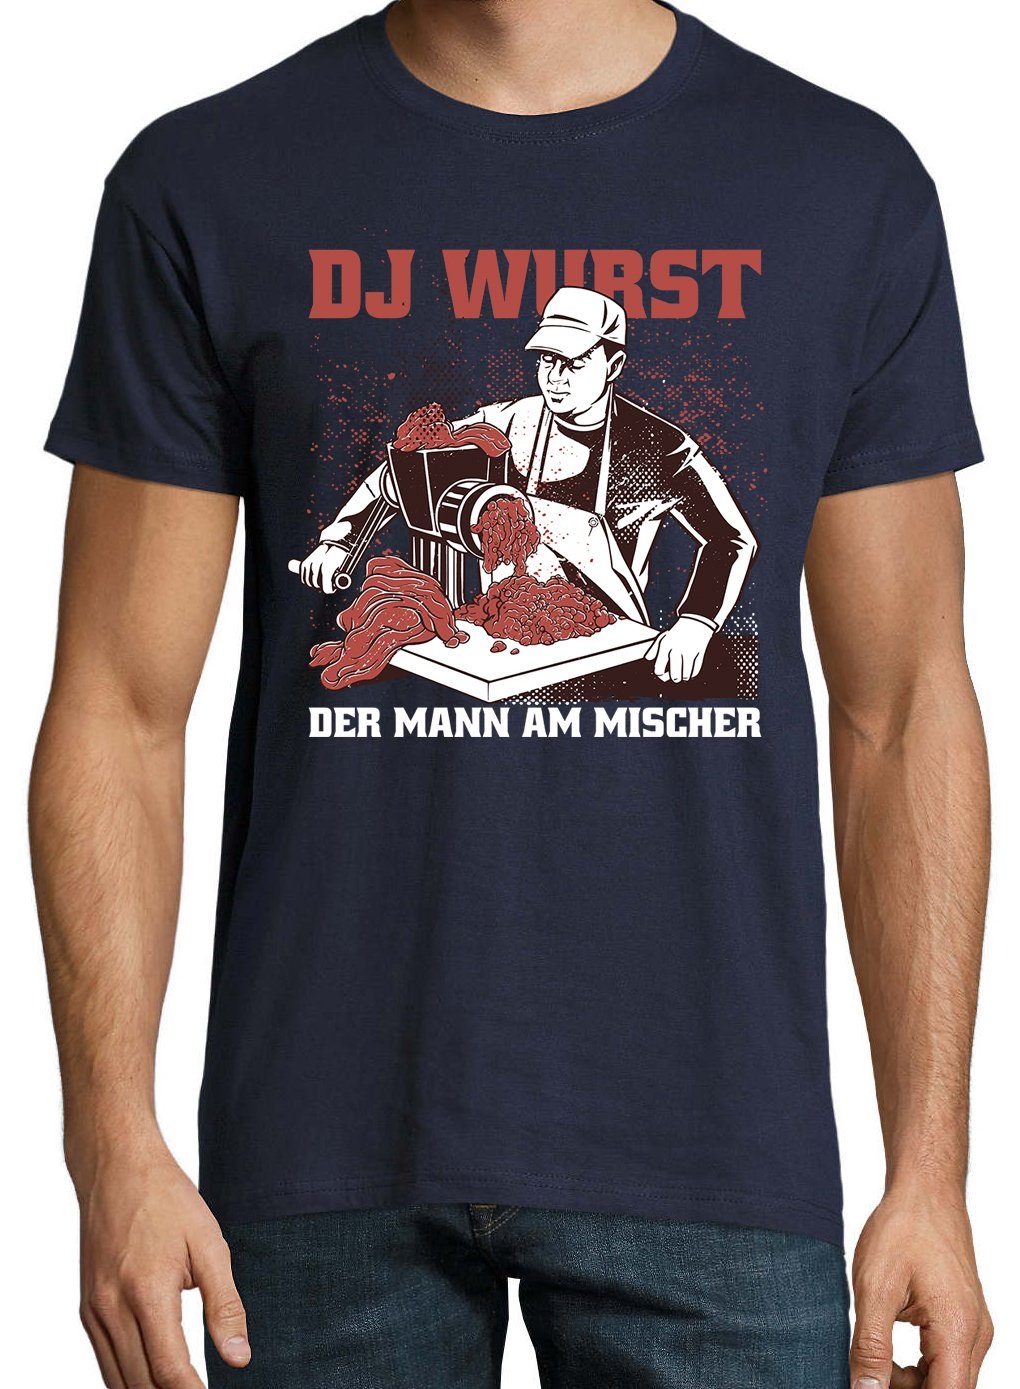 Wurst Shirt T-Shirt Fleischer Herren Youth lustigem mit DJ Designz Navyblau Frontprint